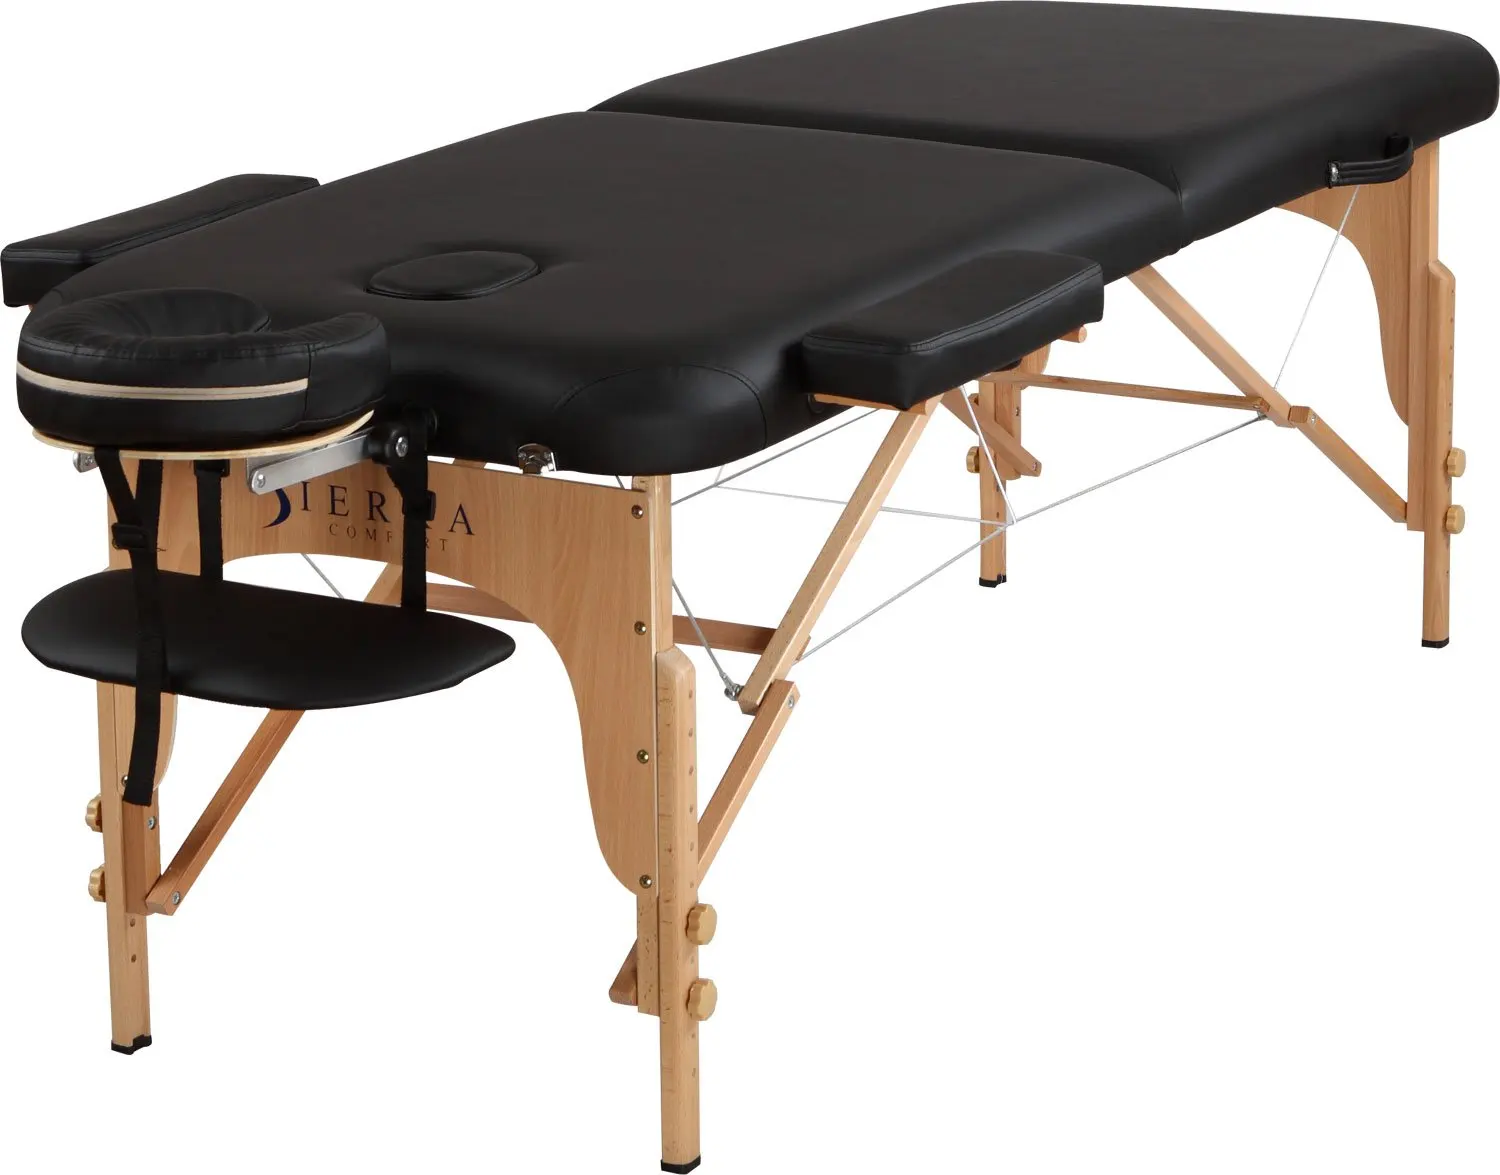 Массажный стол с отверстием. Runda rd8000n стол массажный. Массажный стол, massage Chair. Массажный стол модель mz35-150-b. Стол массажный 190х70.